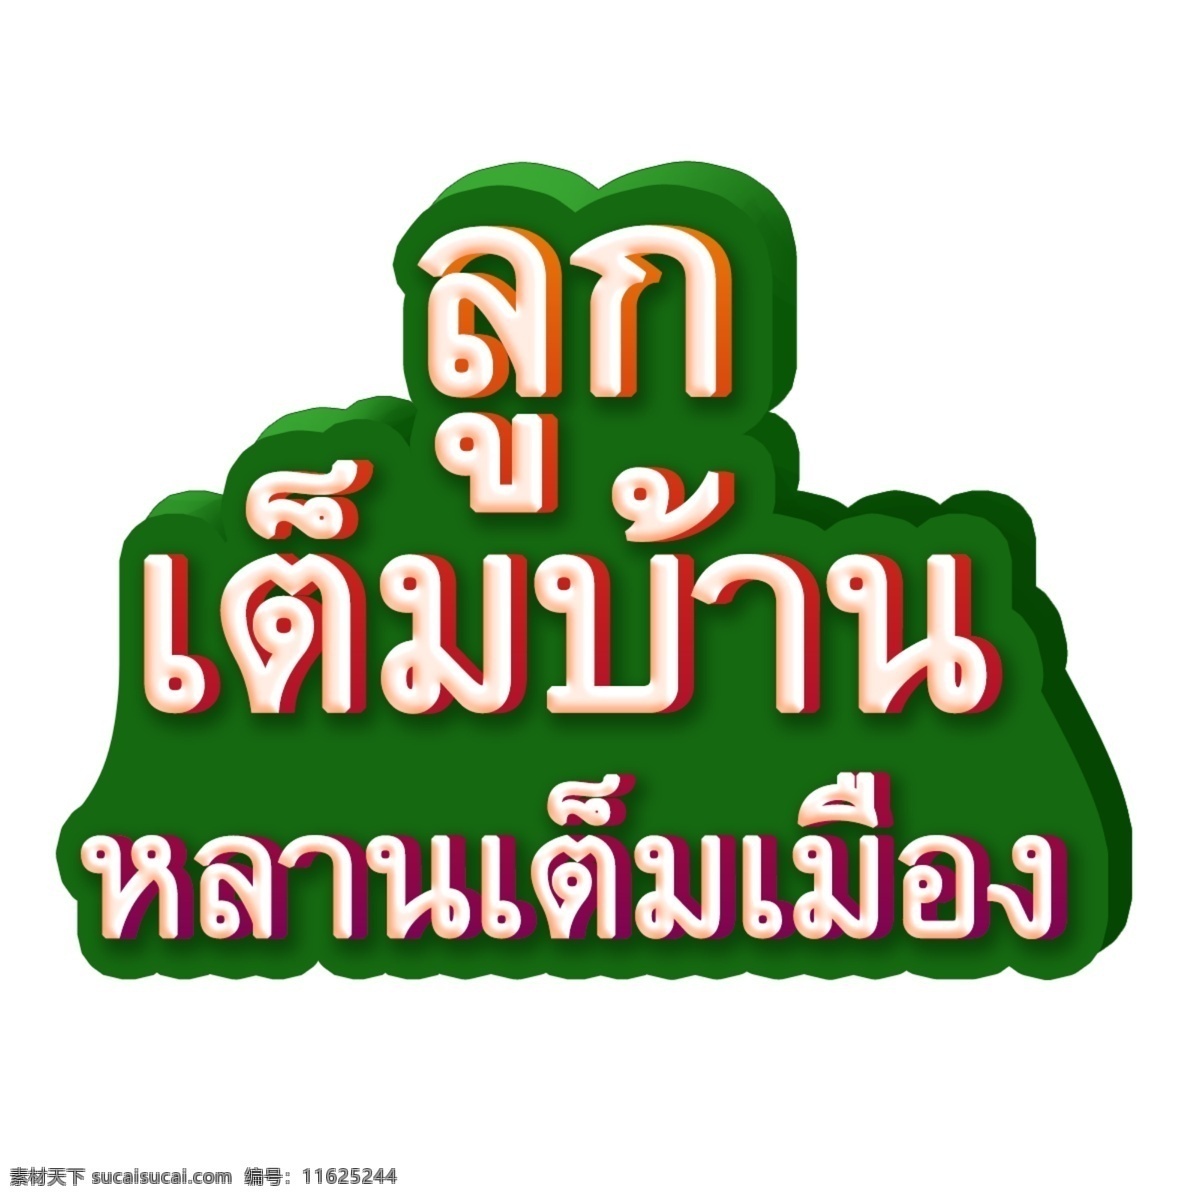 泰国 绿色 背景 字体 你家 儿孙满堂 地板 你的房子